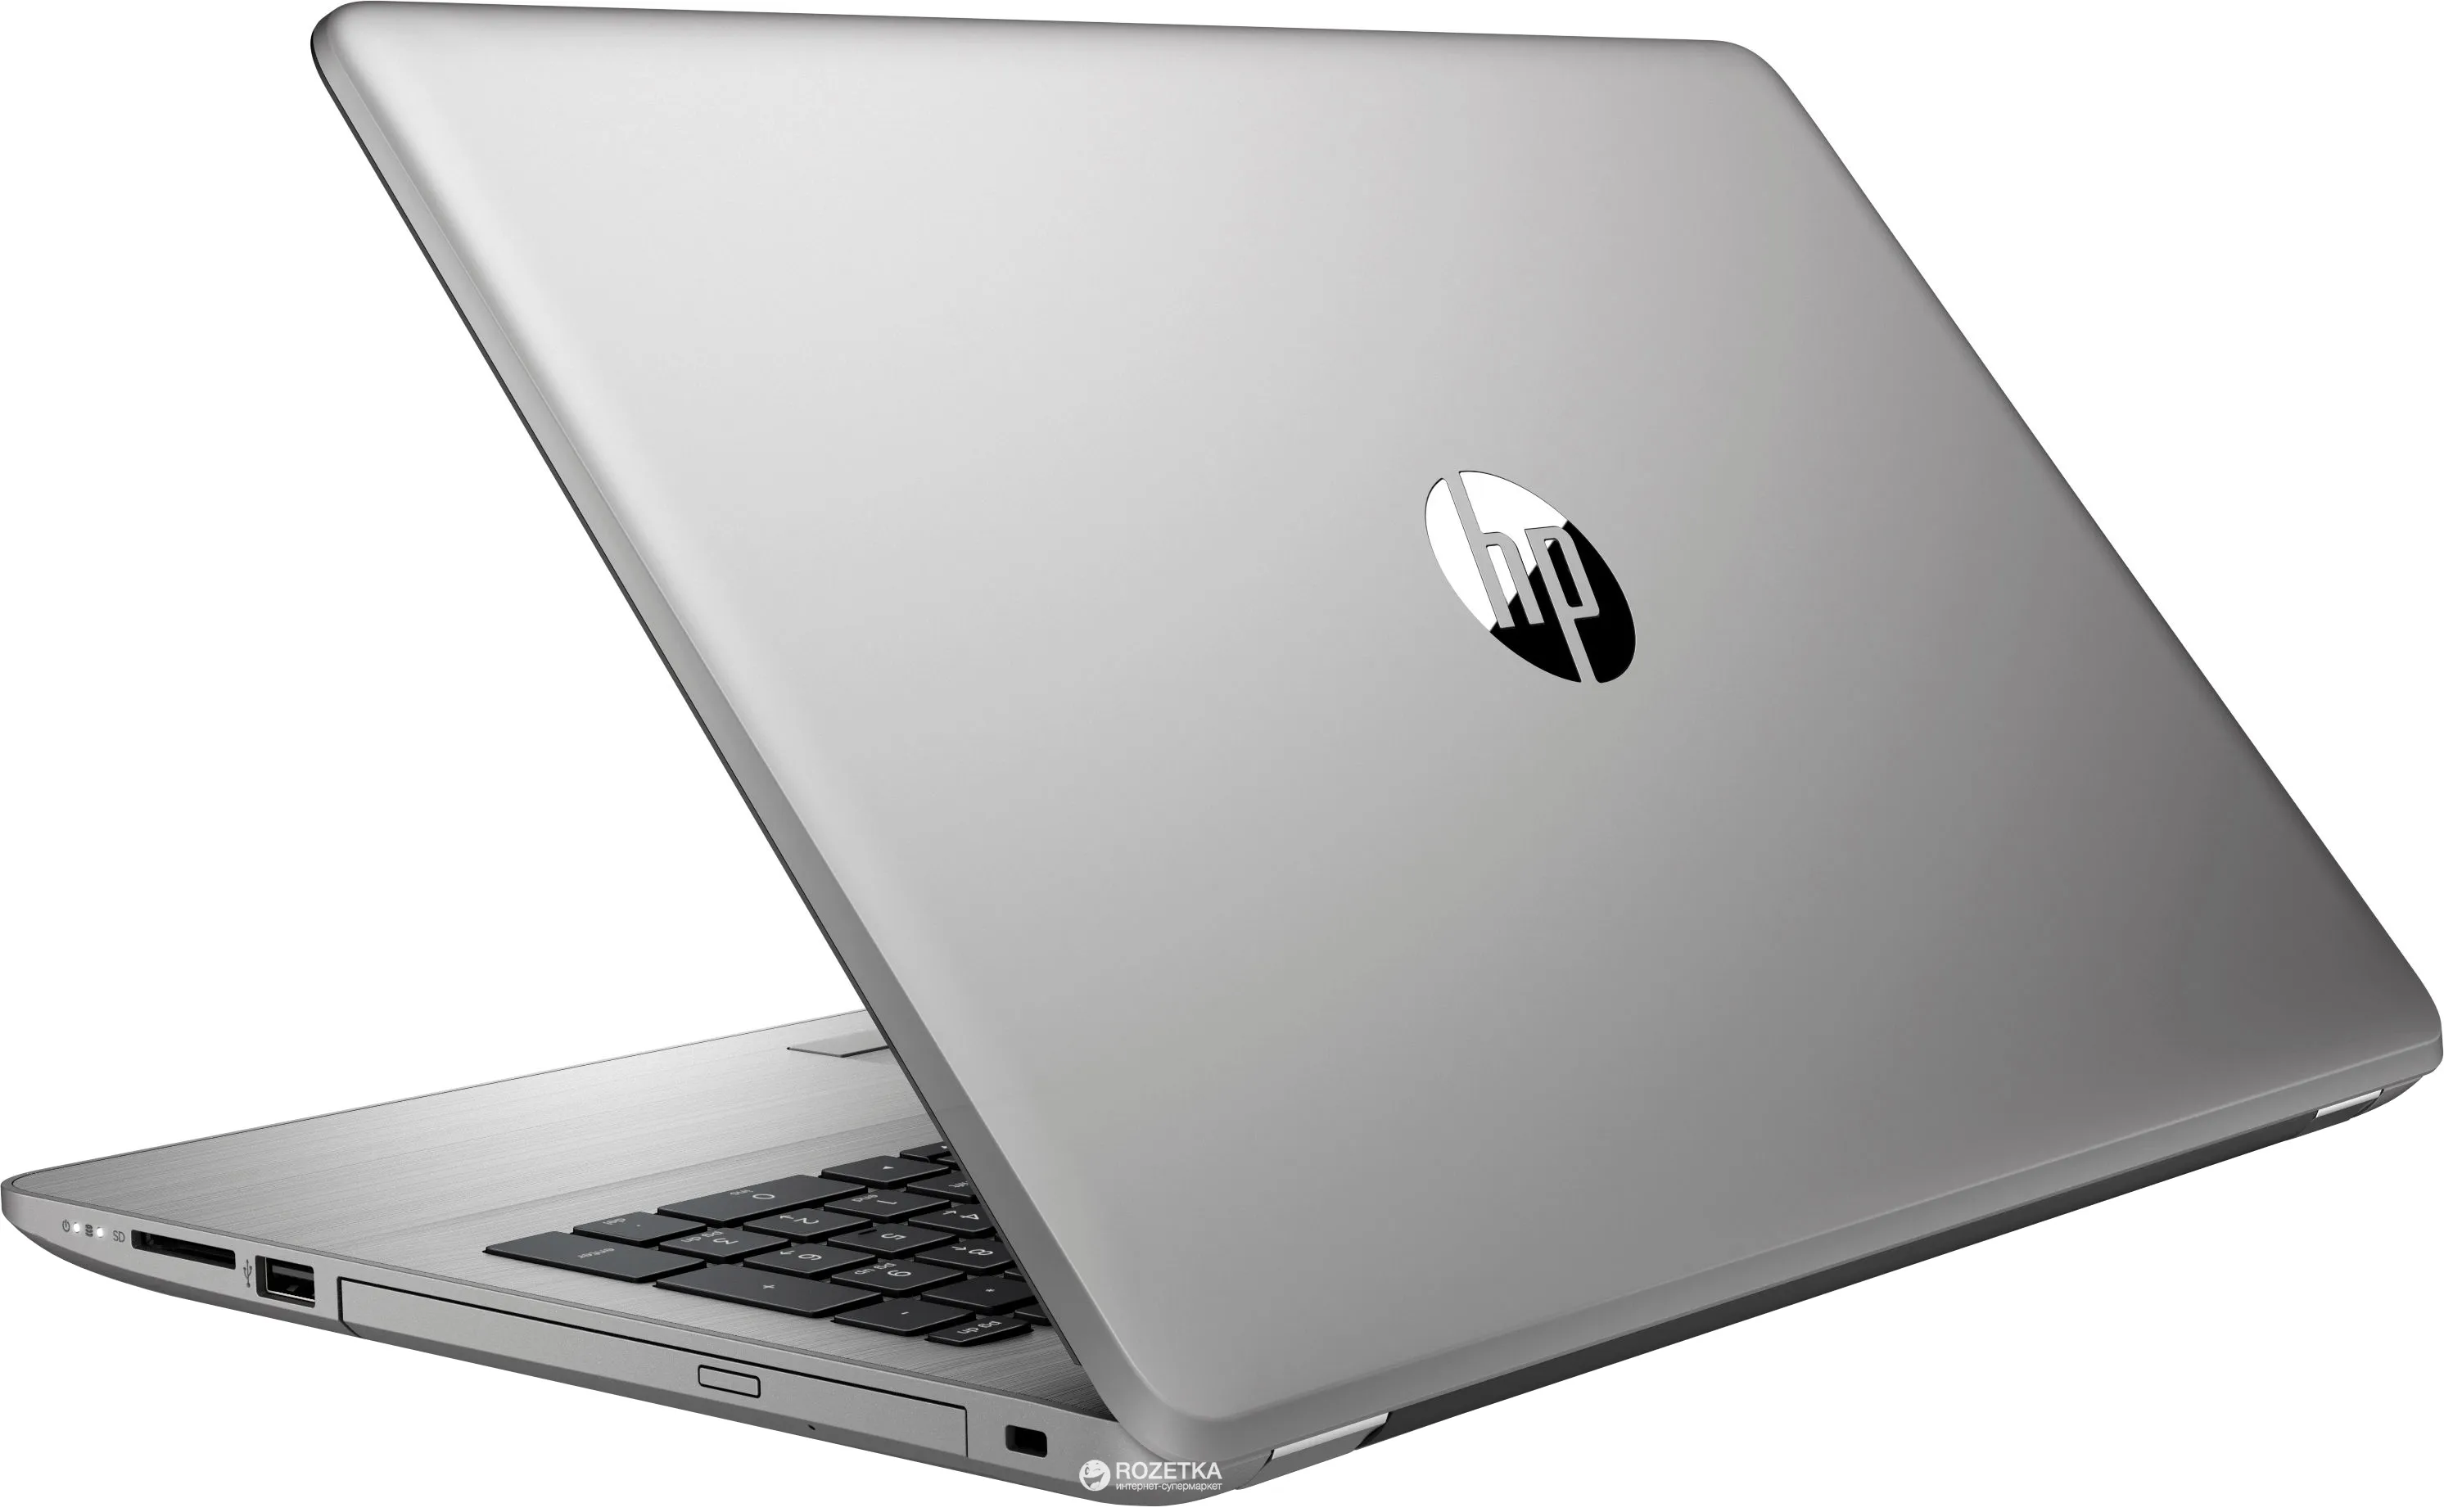 Ноутбук HP 455 G1 /AMD A10-5750/8 GB DDR4/ 500GB HDD /15.6" HD LED/ 2GB AMD Radeon HD 8750M/DVD/RUS+ Bag#4